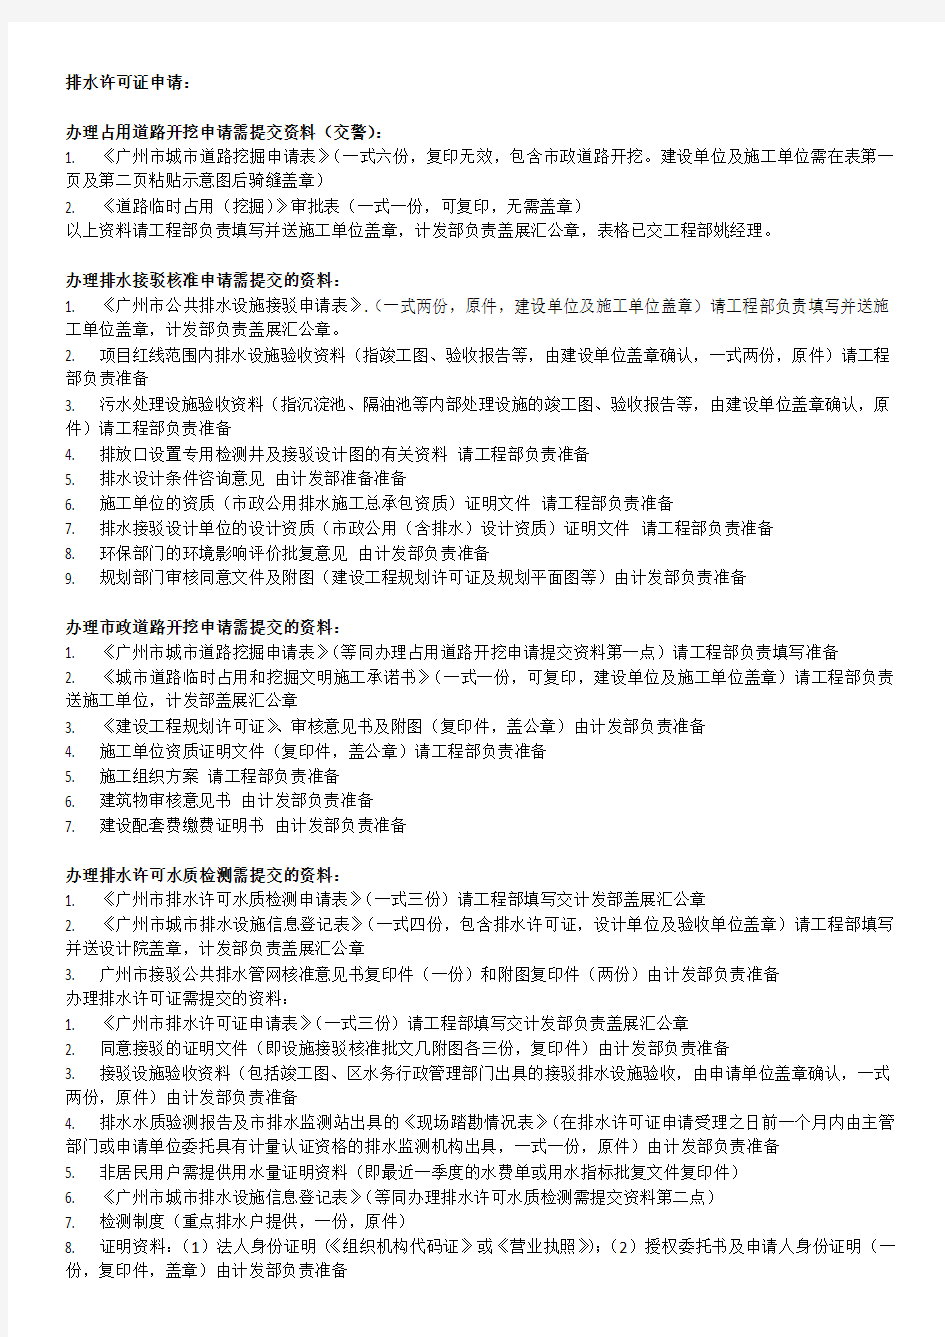 广州市建设工程排水许可证申报指南